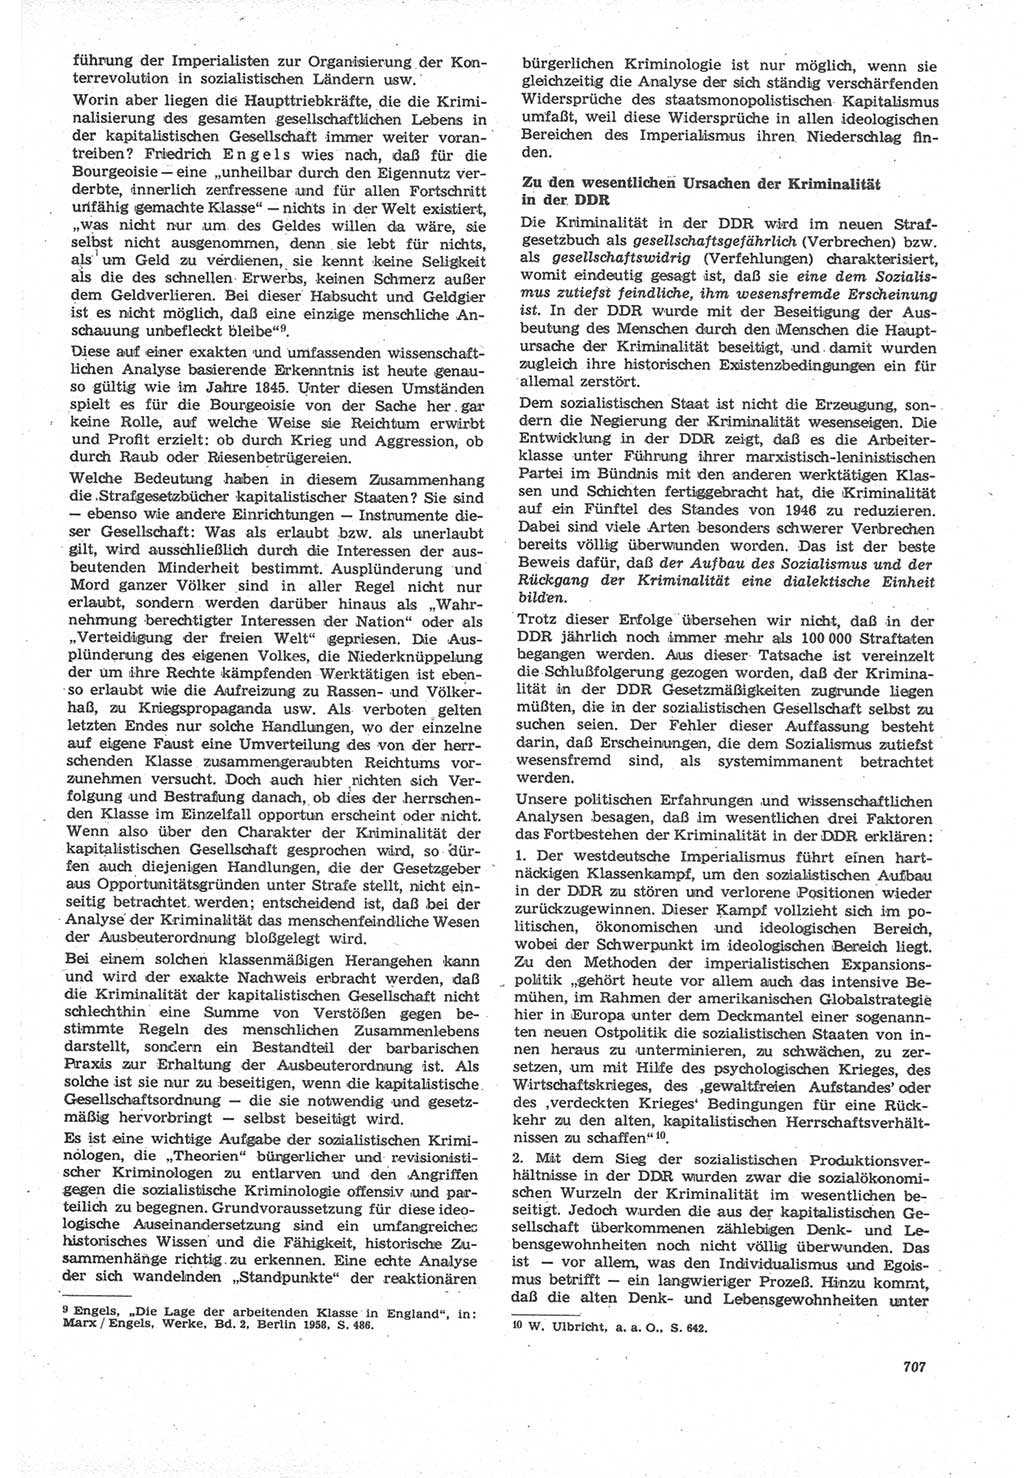 Neue Justiz (NJ), Zeitschrift für Recht und Rechtswissenschaft [Deutsche Demokratische Republik (DDR)], 22. Jahrgang 1968, Seite 707 (NJ DDR 1968, S. 707)